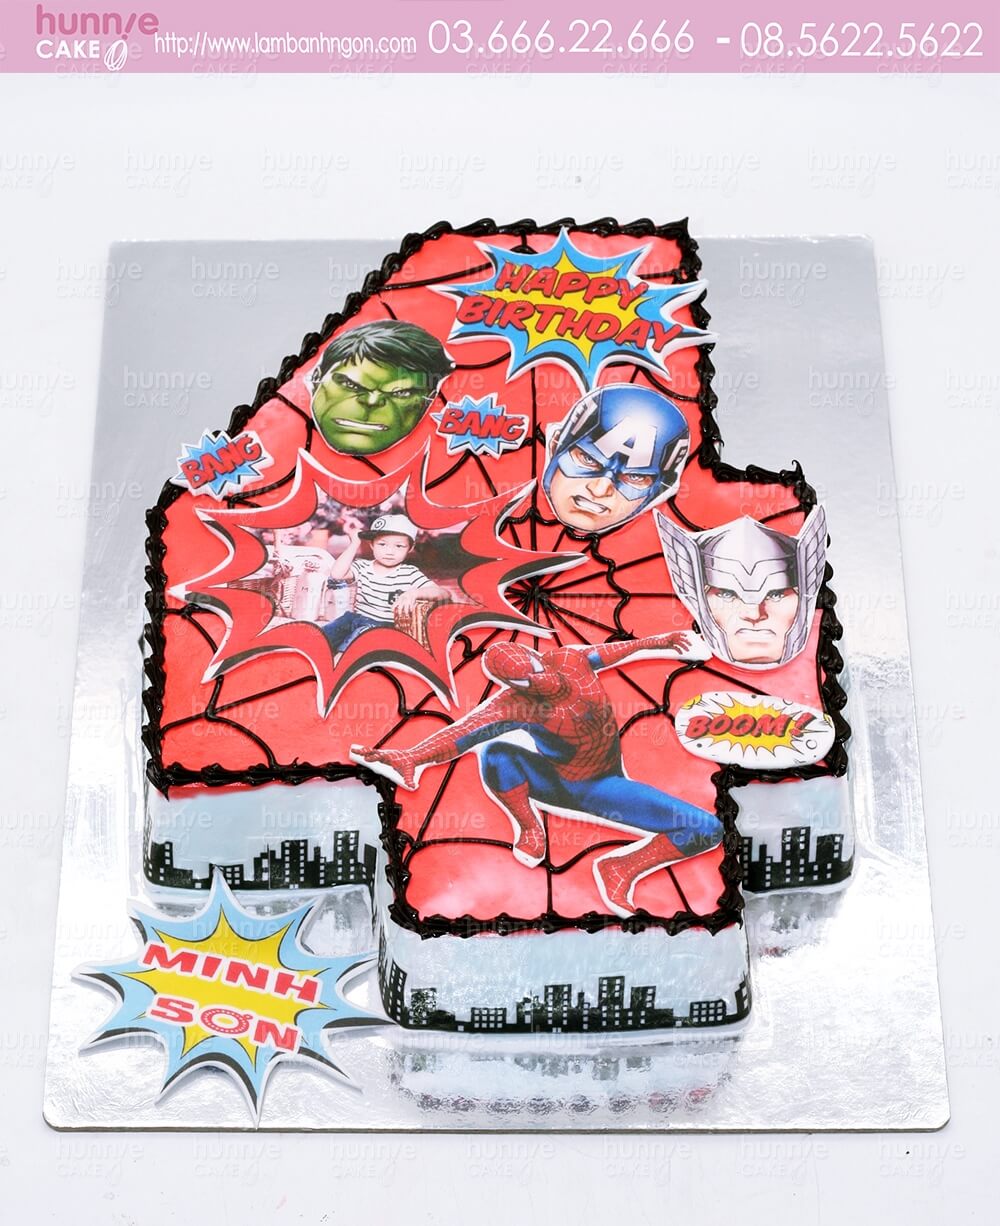 Bánh gato sinh nhật in ảnh cắt hình số 4 chủ đề siêu nhân, siêu anh hùng người nhện Spiderman, Hulk, Captan American.. tặng sinh nhật bé trai 5802 - Bánh ngon đẹp